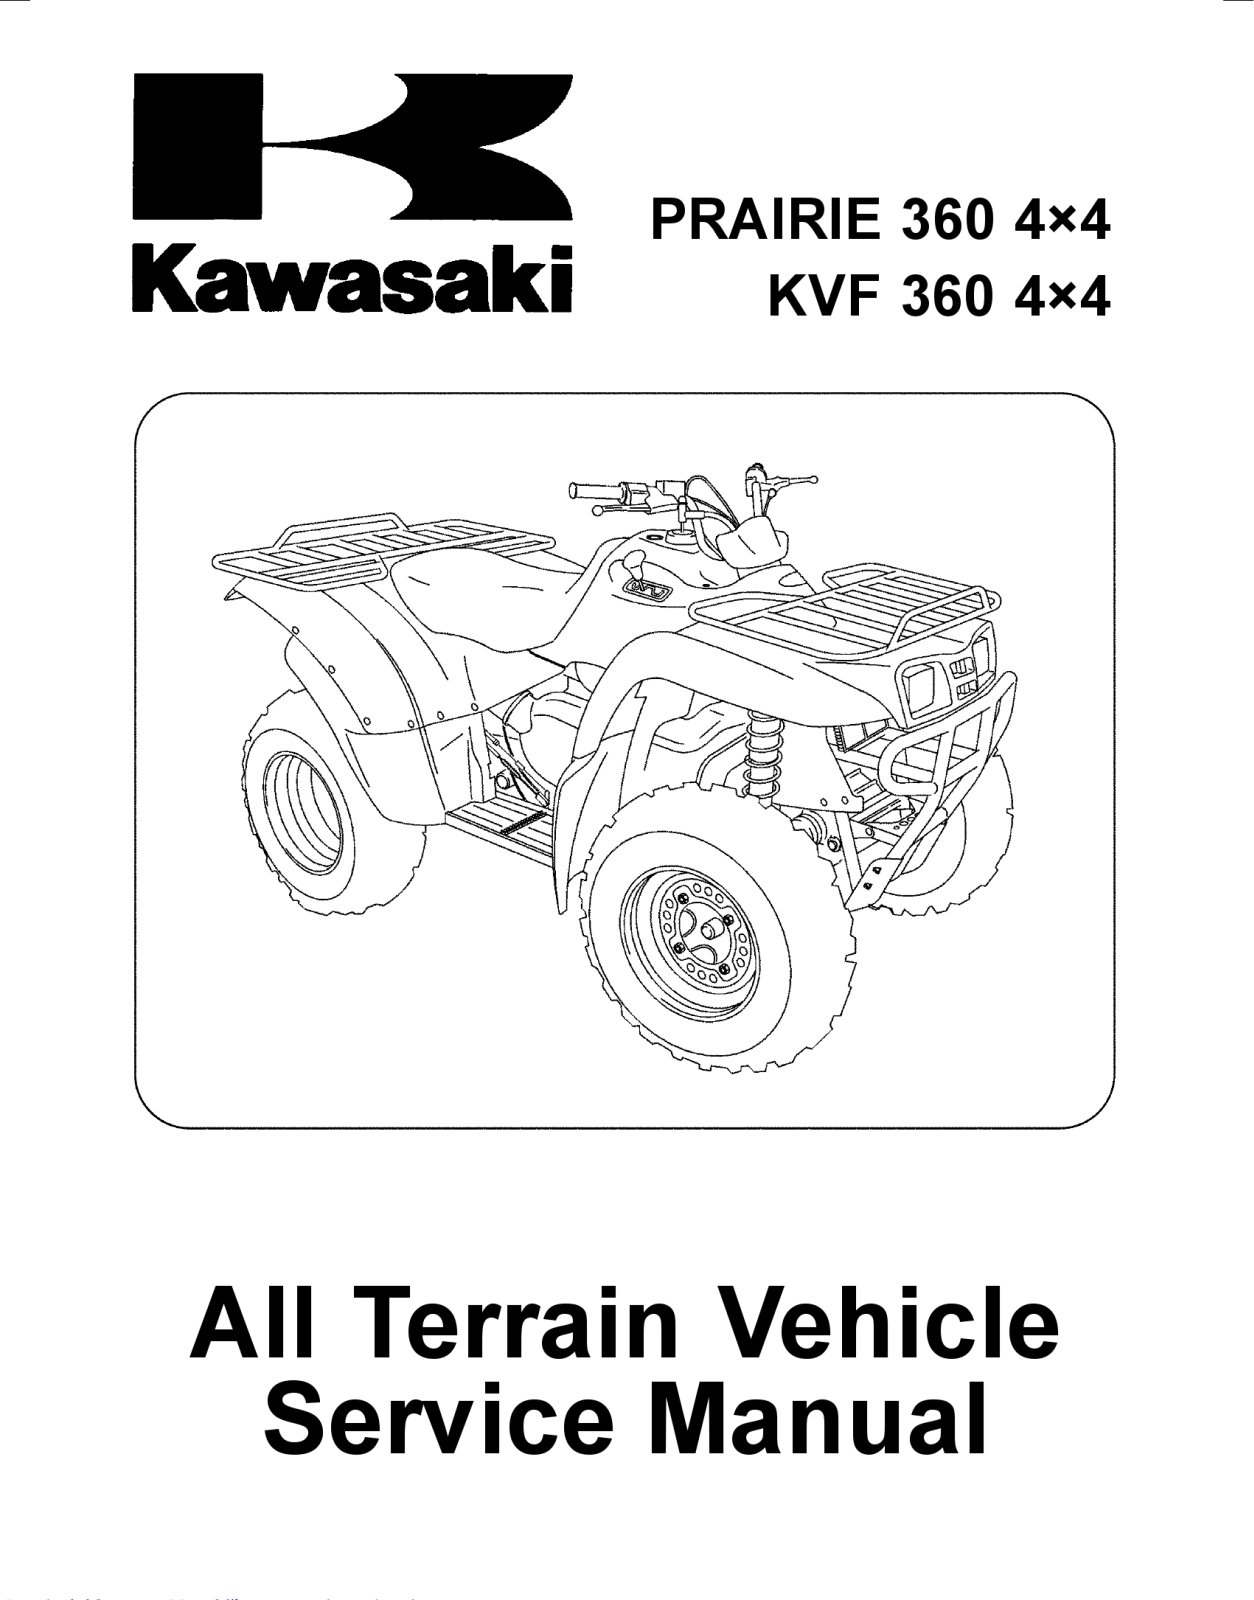 Kawasaki KVF 360 4×4 Service Manual